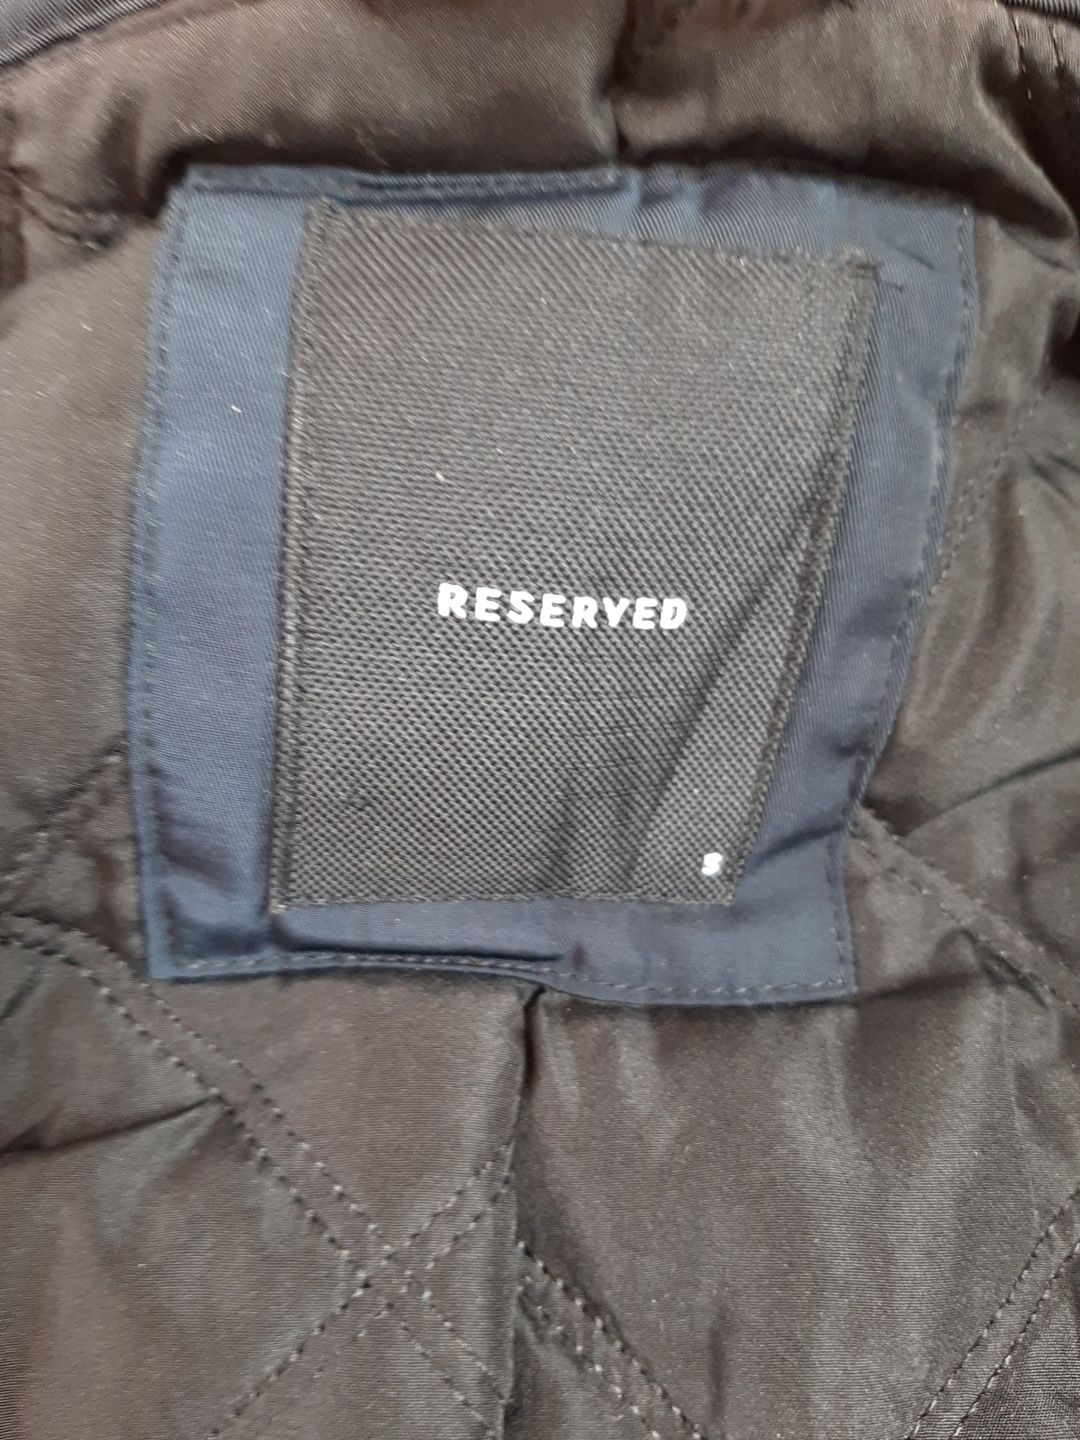 Куртка reserved. Розмір s.